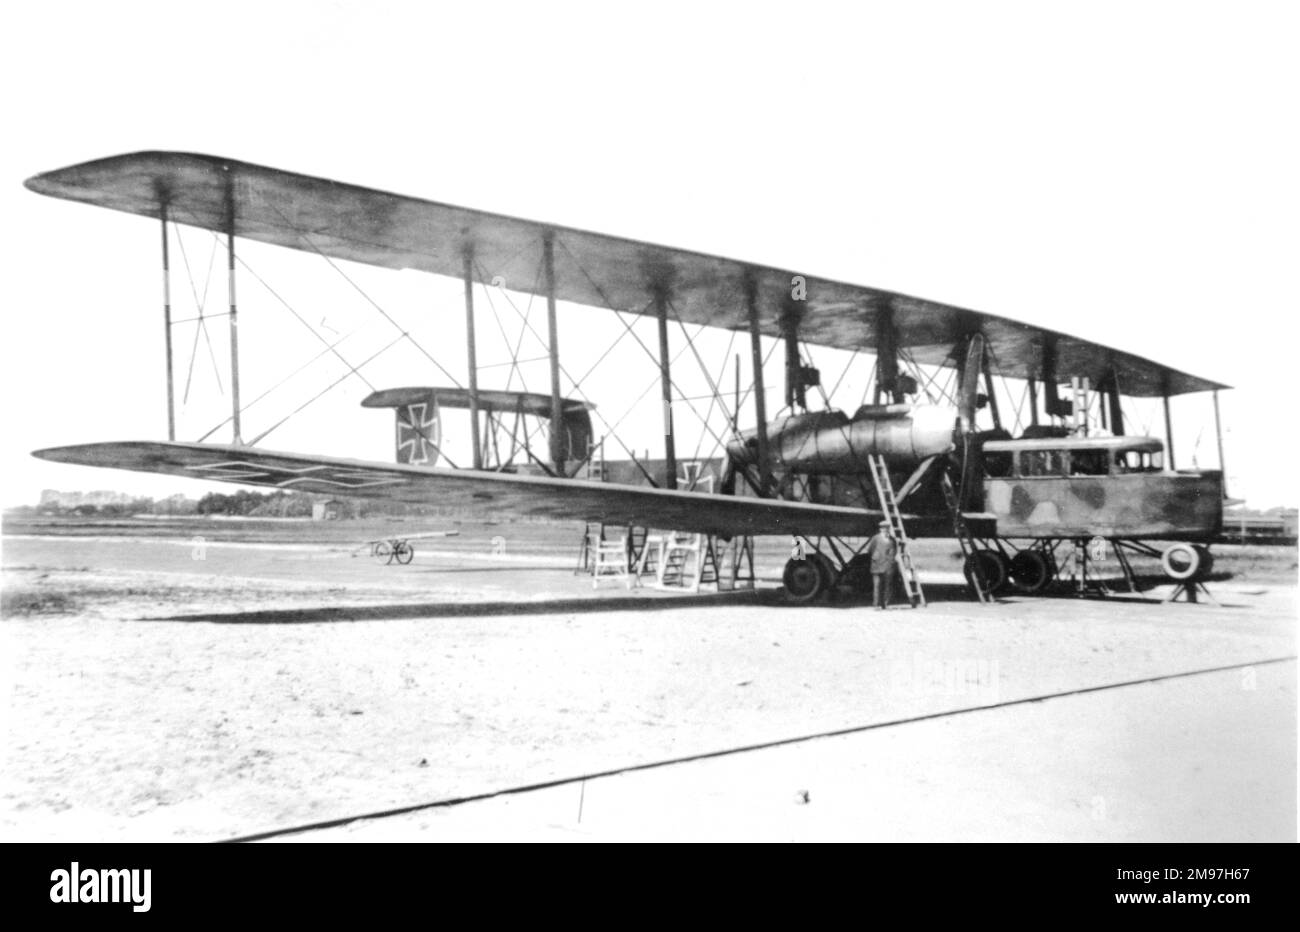 Zeppelin-Staaken R VI. Deutscher Langstrecken-Riesenbomber, erstmals Mitte 1917 geflogen. Insgesamt wurden 18 gebaut. Sie wurden an die Westfront geliefert und manchmal bei Razzien auf dem britischen Festland sowie in französischen Häfen und Städten eingesetzt. Stockfoto